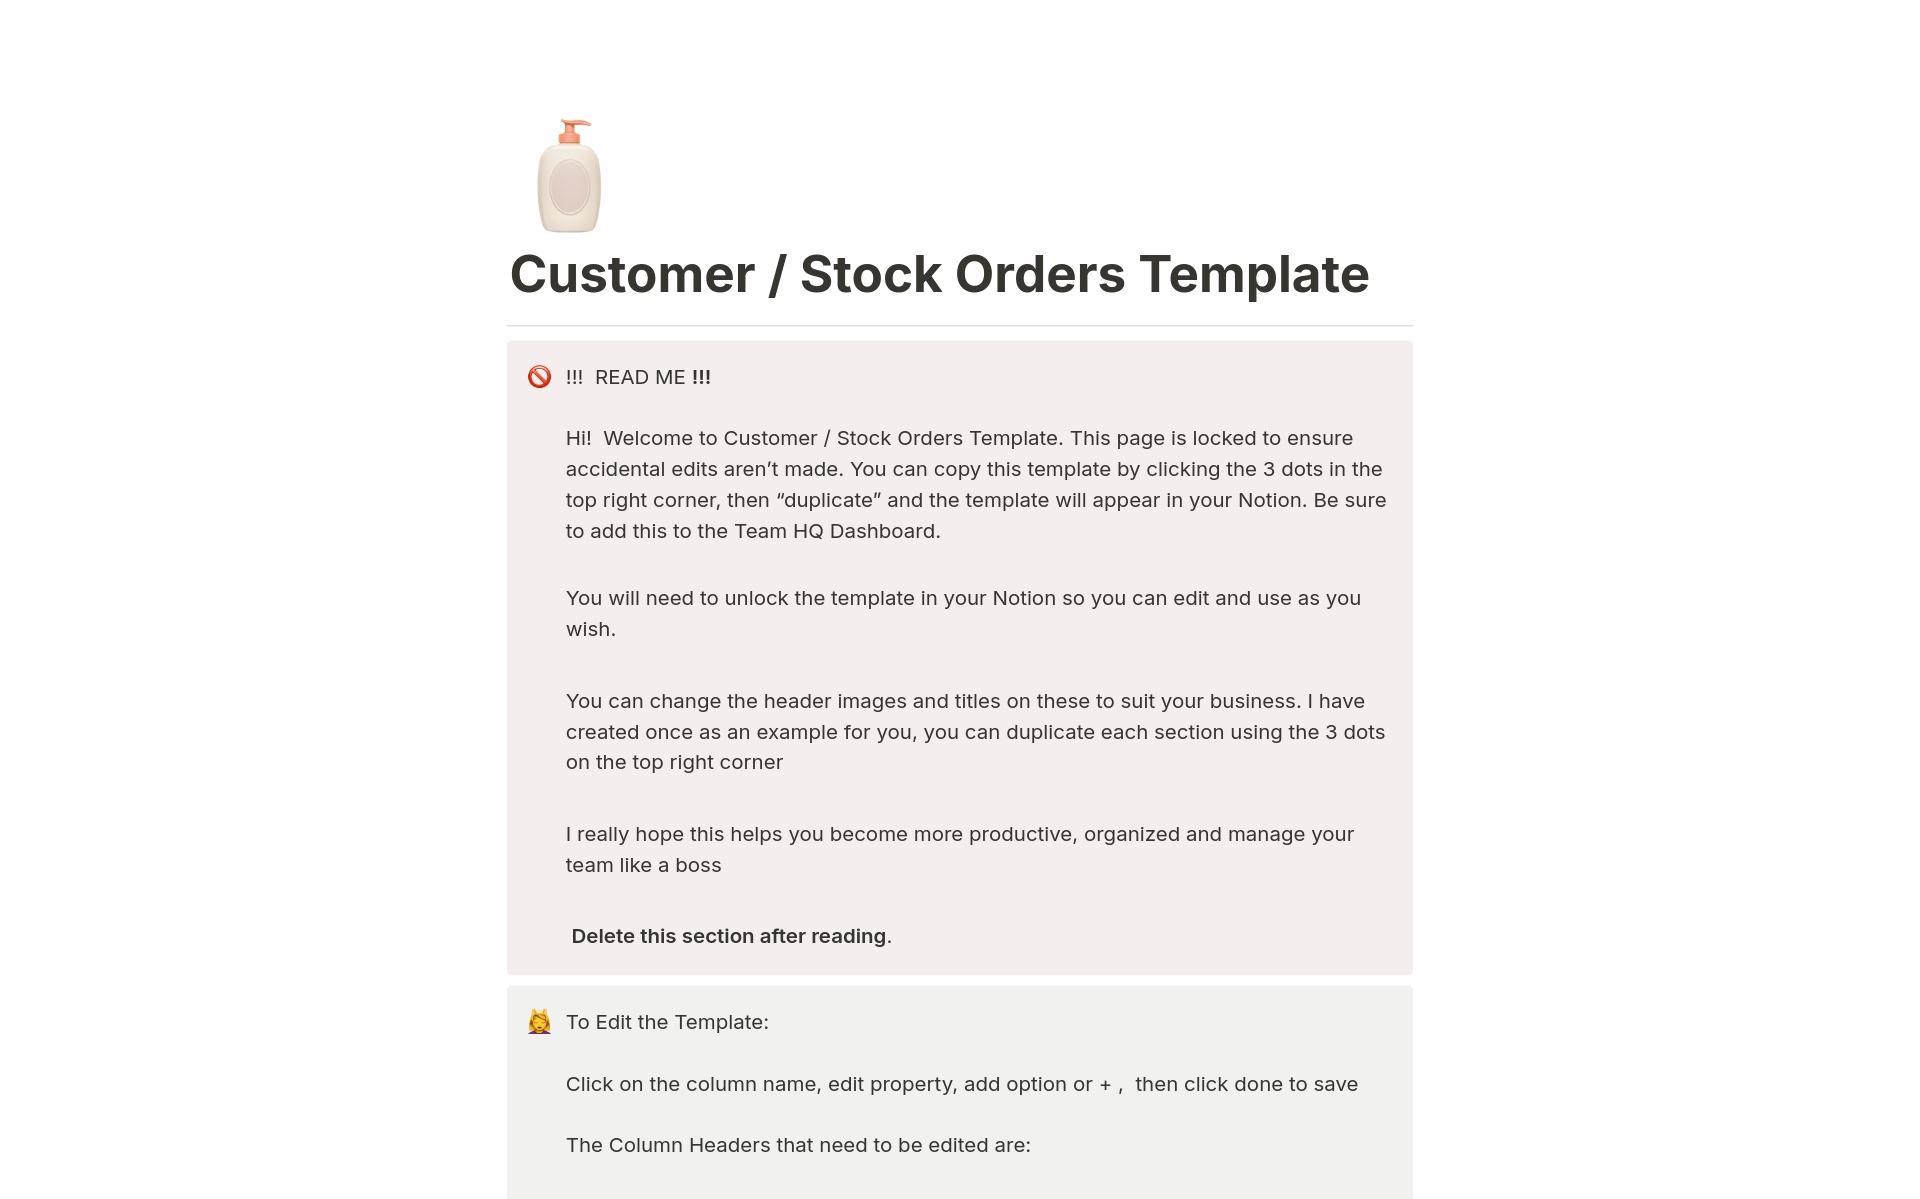 Uma prévia do modelo para Customer / Stock Orders